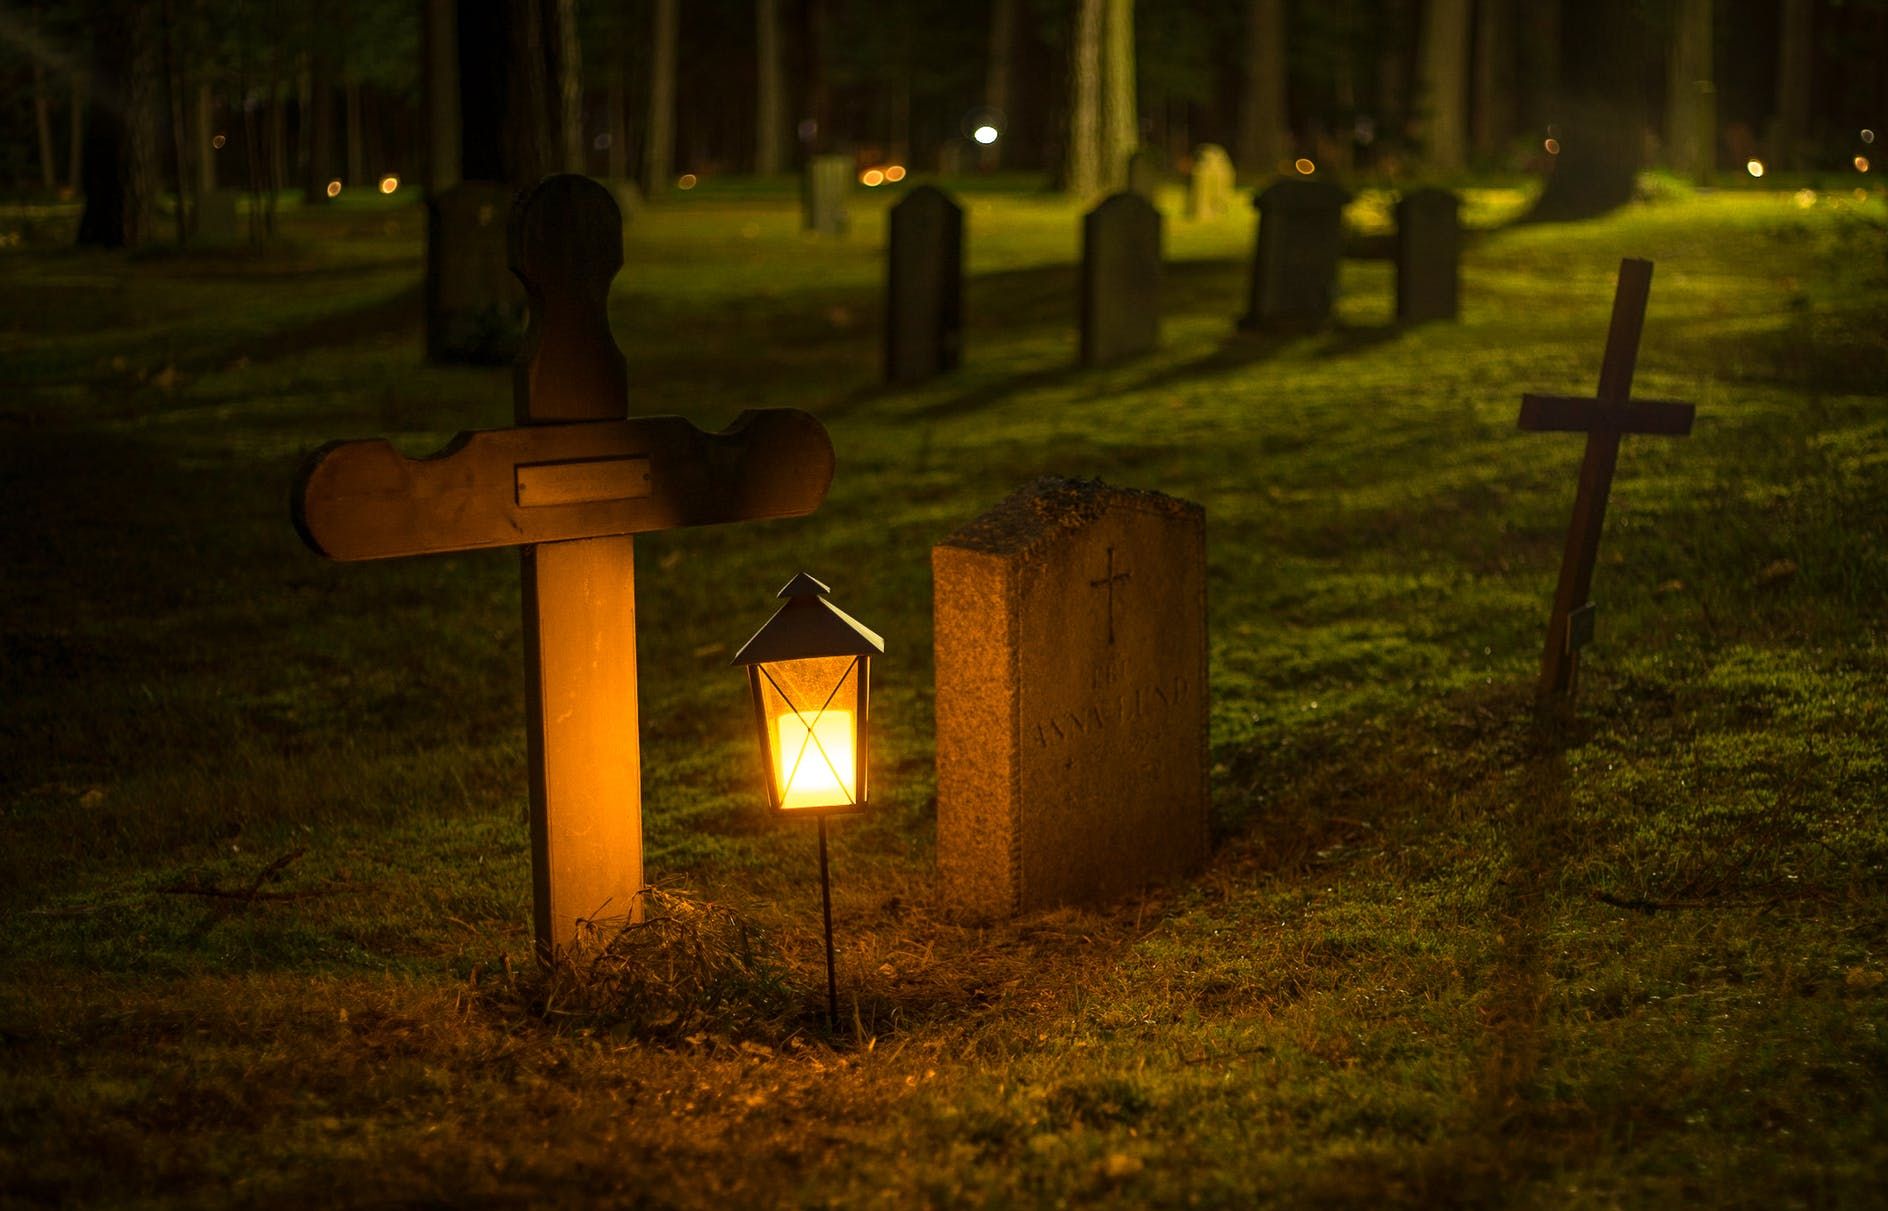 Incroyable ! Gagnez 230 euros pour dormir dans un cimetière le soir d’Halloween !